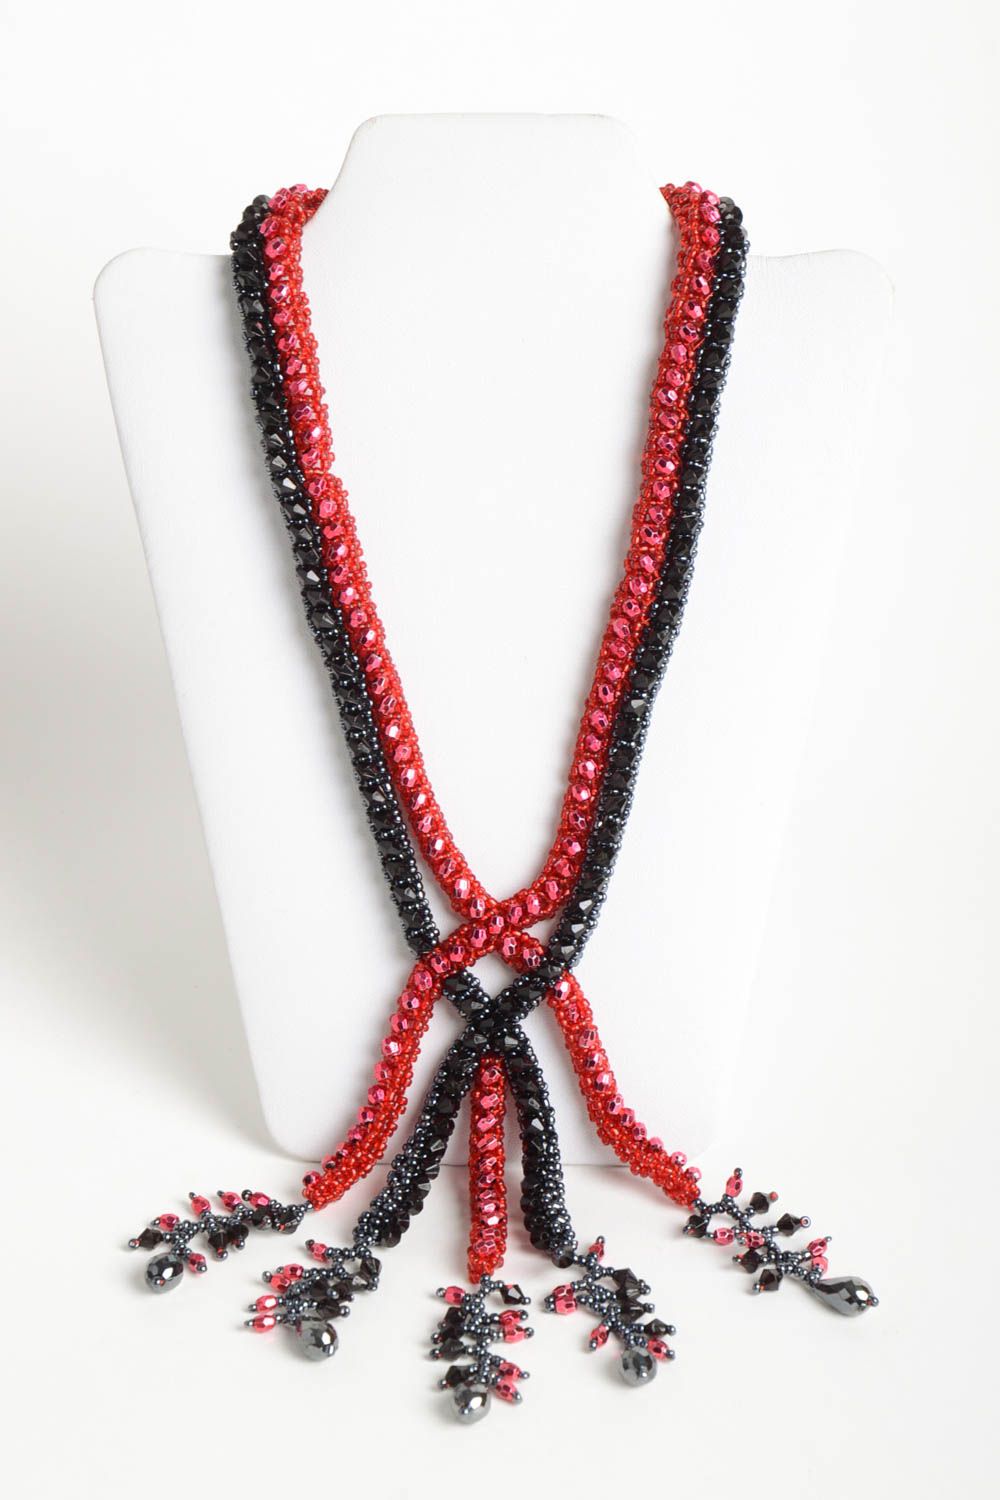 Collier perles rocaille Bijou fait main rouge noir Accessoire femme cadeau photo 1